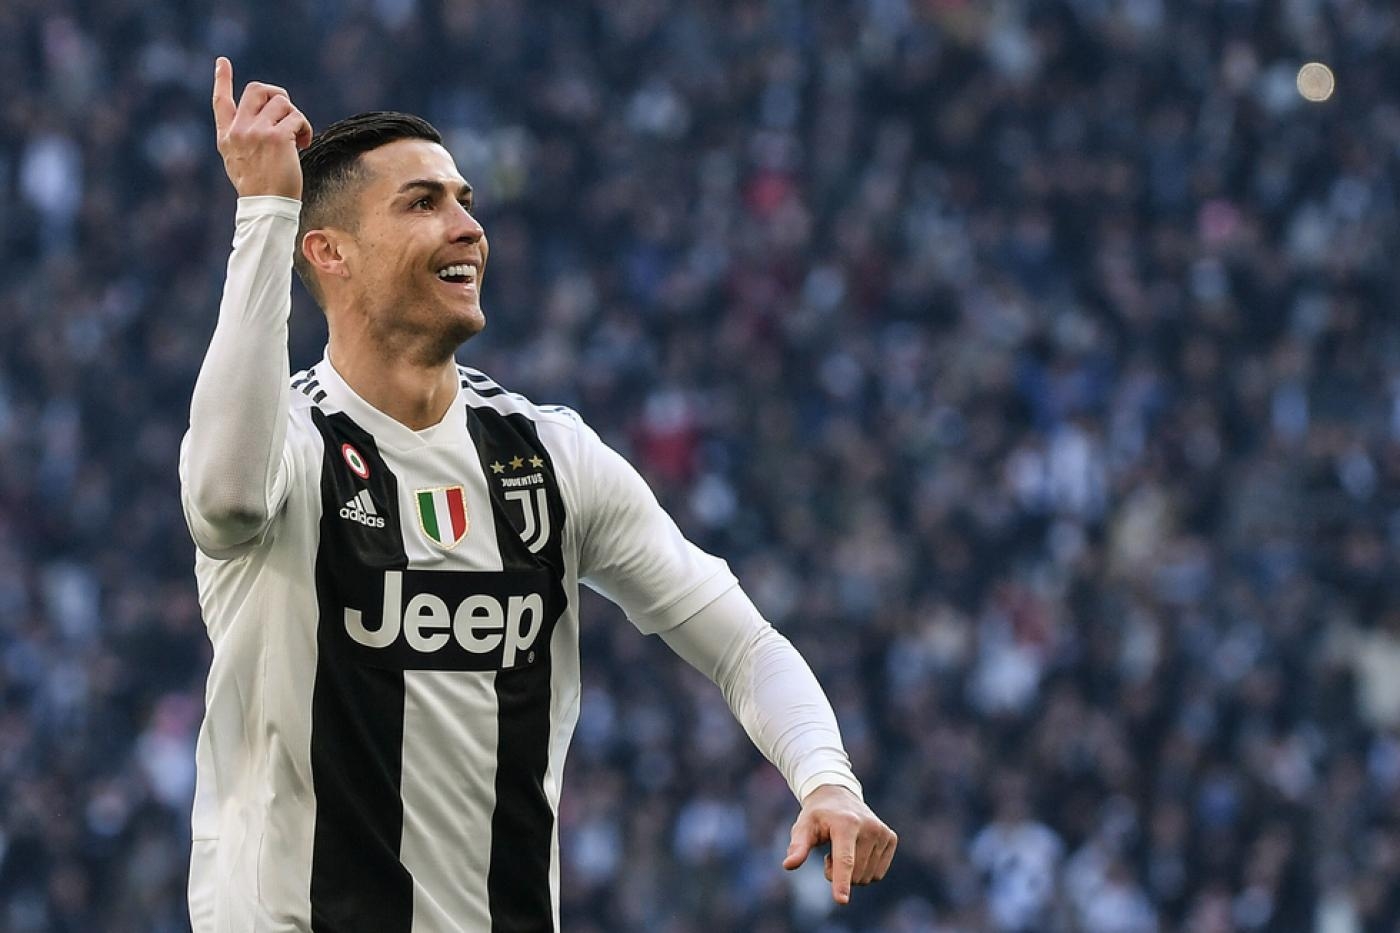 Ronaldo est devenu le meilleur buteur de tous les temps, après avoir inscrit le 760e but de sa carrière, marqué lors de la victoire 2-0 de son équipe en Supercoupe d’Italie contre Naples le 20 janvier 2021 (AFP)